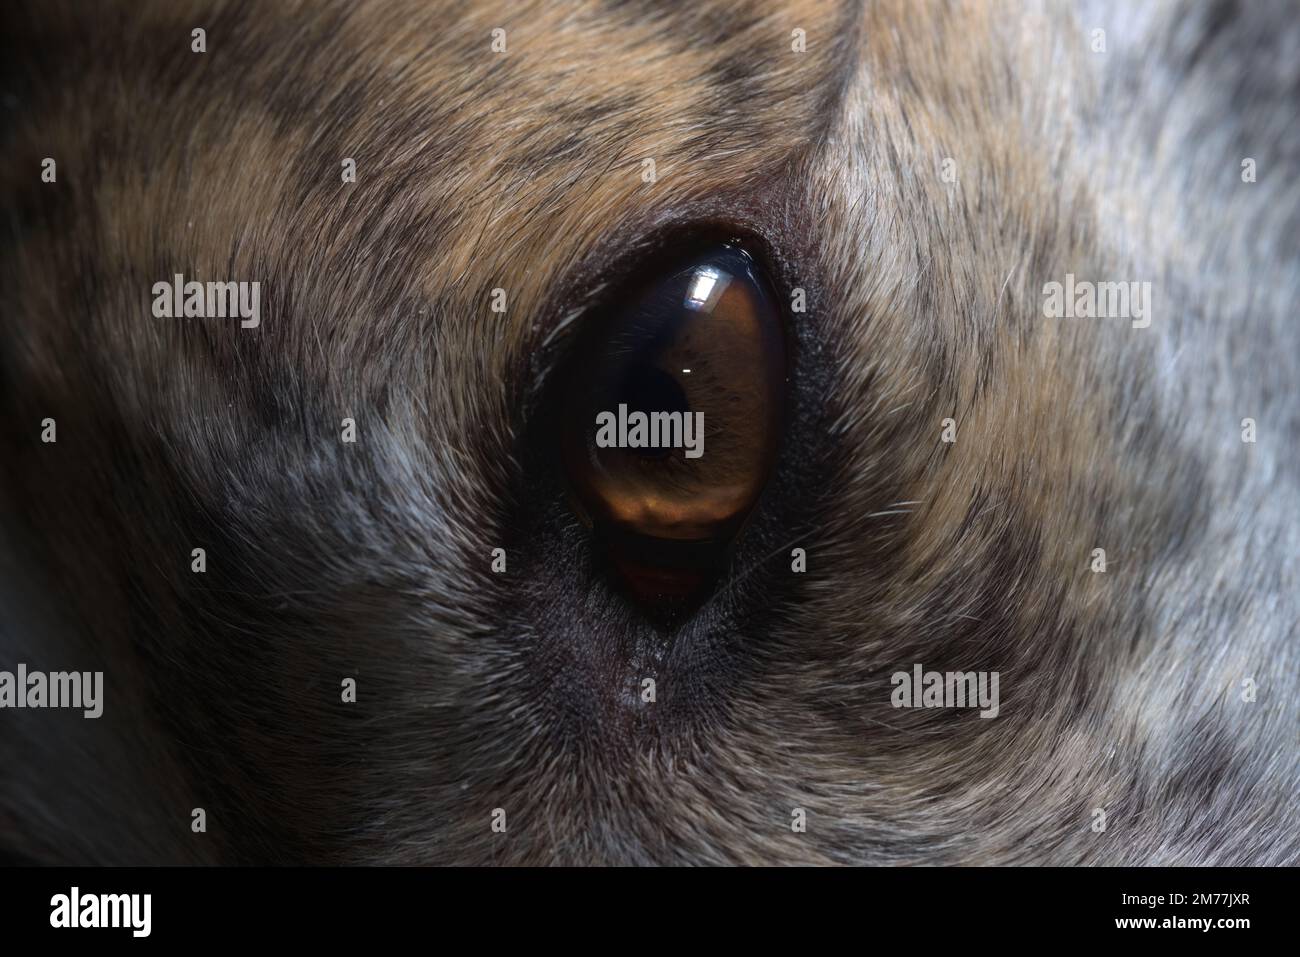 Kontrastreiches Bild eines mit einem hellen Blitz beleuchteten Windhunde-Auges. Super-Makro-Nahaufnahme eines Hundegesichts, zeigt auch Fell und Hautschuppen Stockfoto